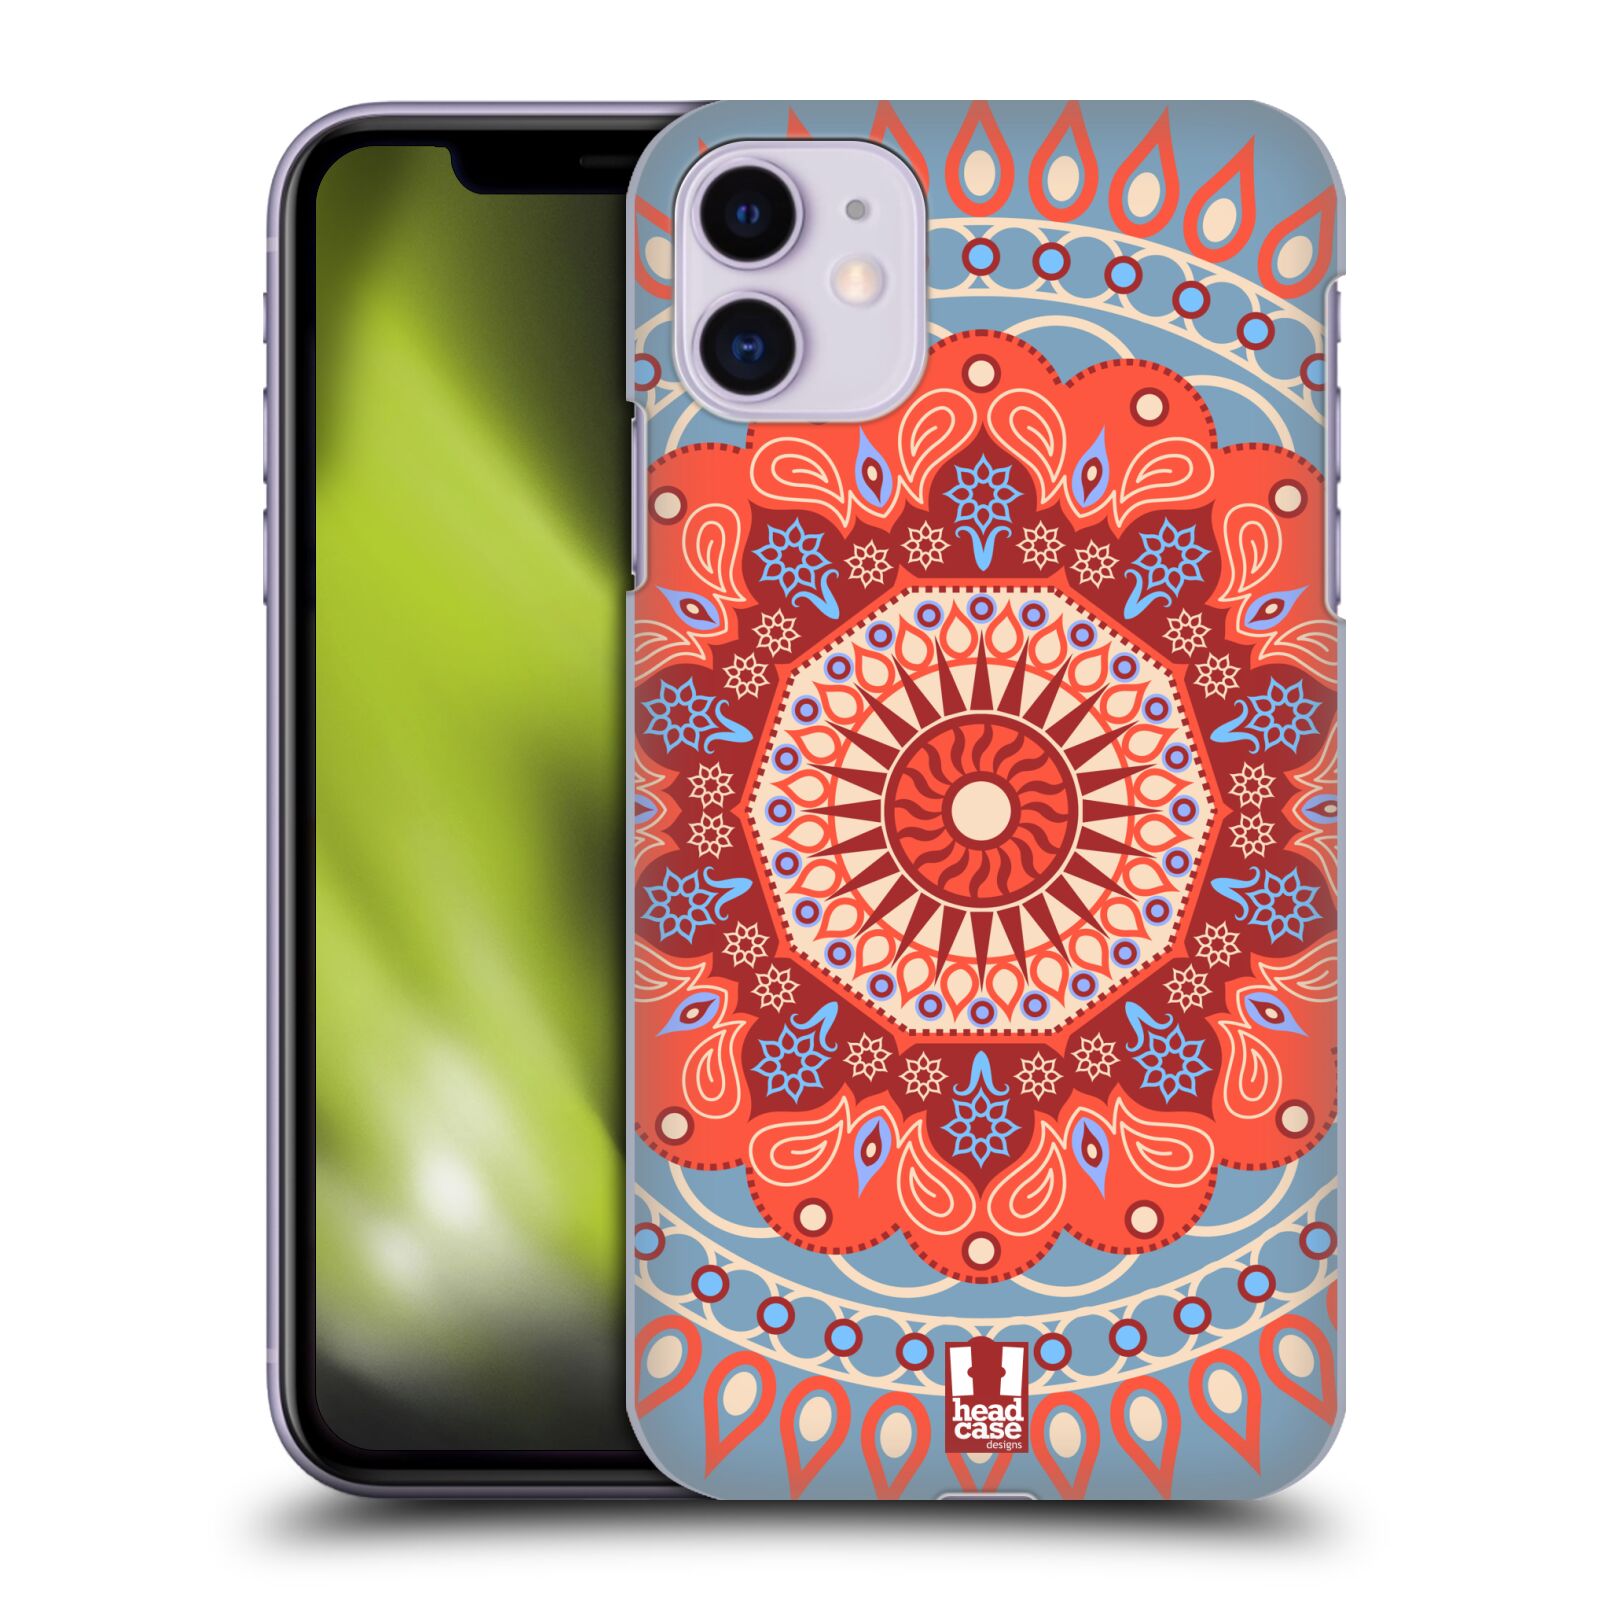 Pouzdro na mobil Apple Iphone 11 - HEAD CASE - vzor Indie Mandala slunce barevný motiv ČERVENÁ A MODRÁ